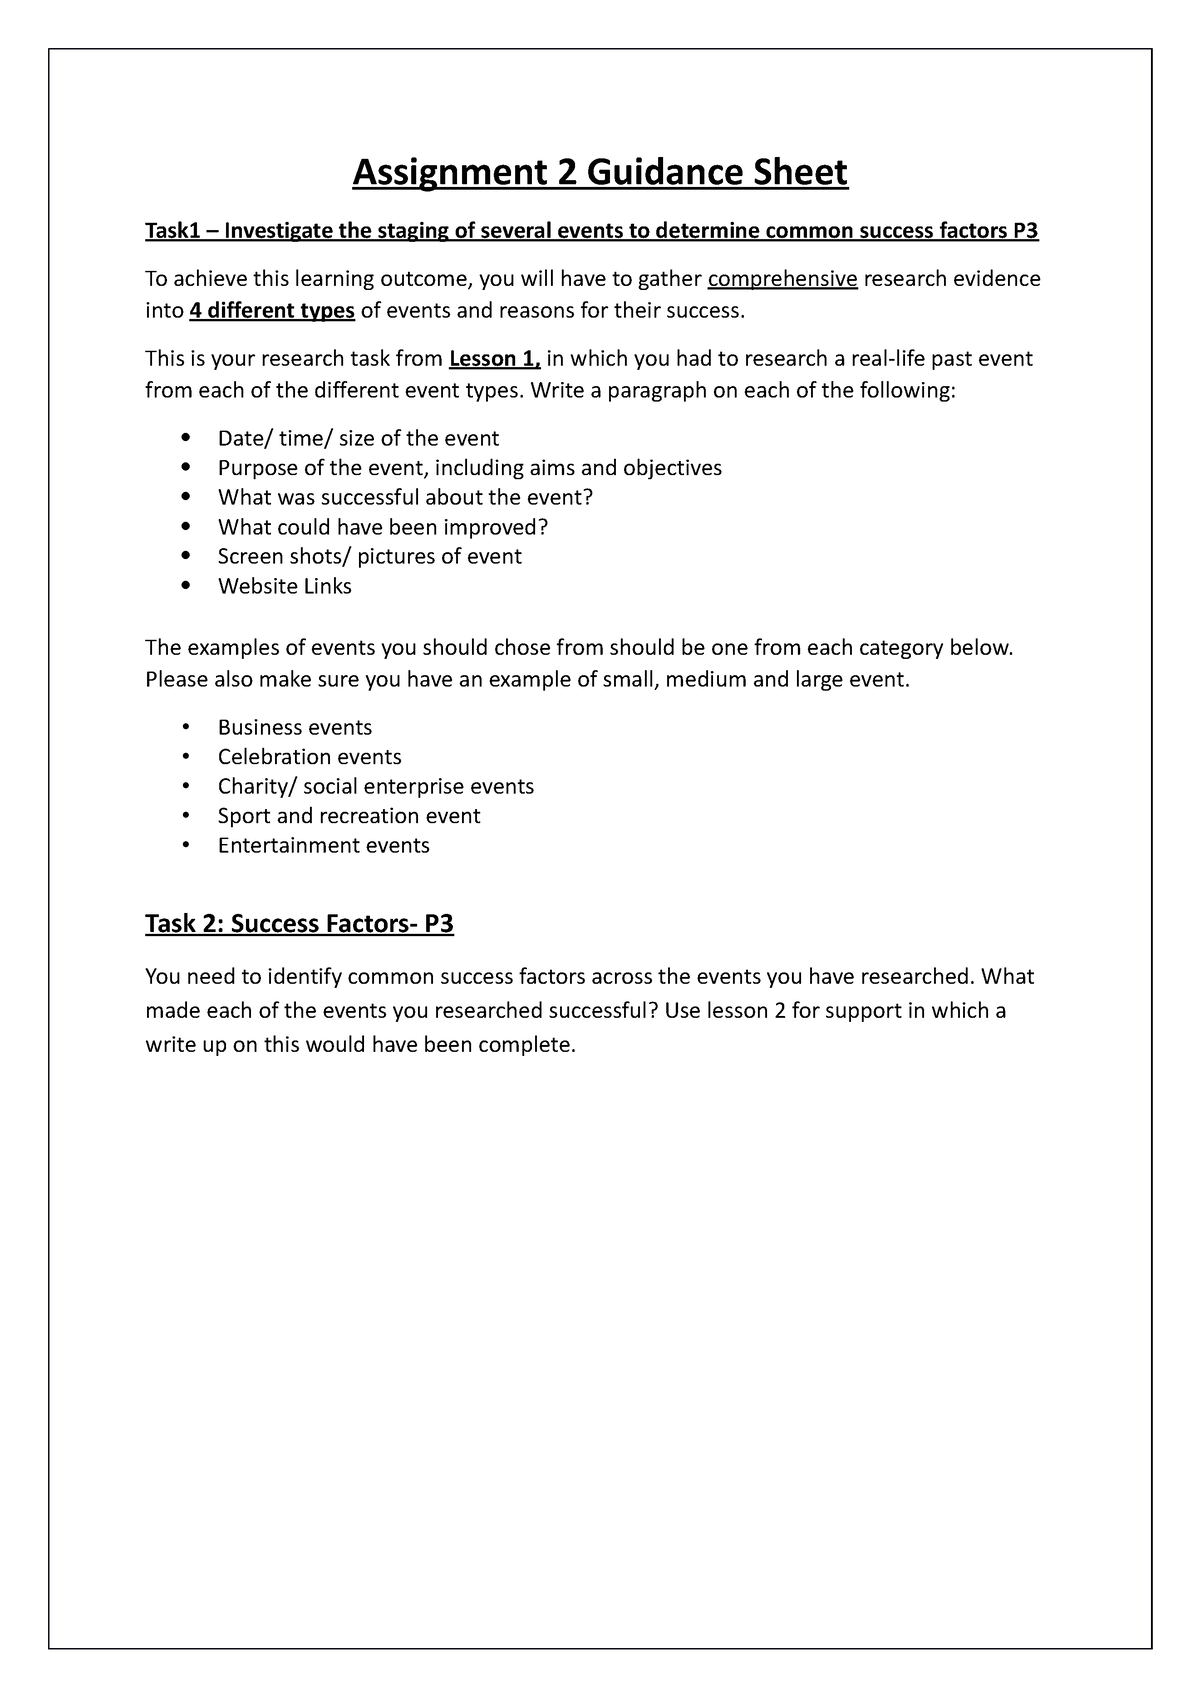 Assignment 2 guidance - fdssd - Assignment 2 Guidance Sheet Task1 ...